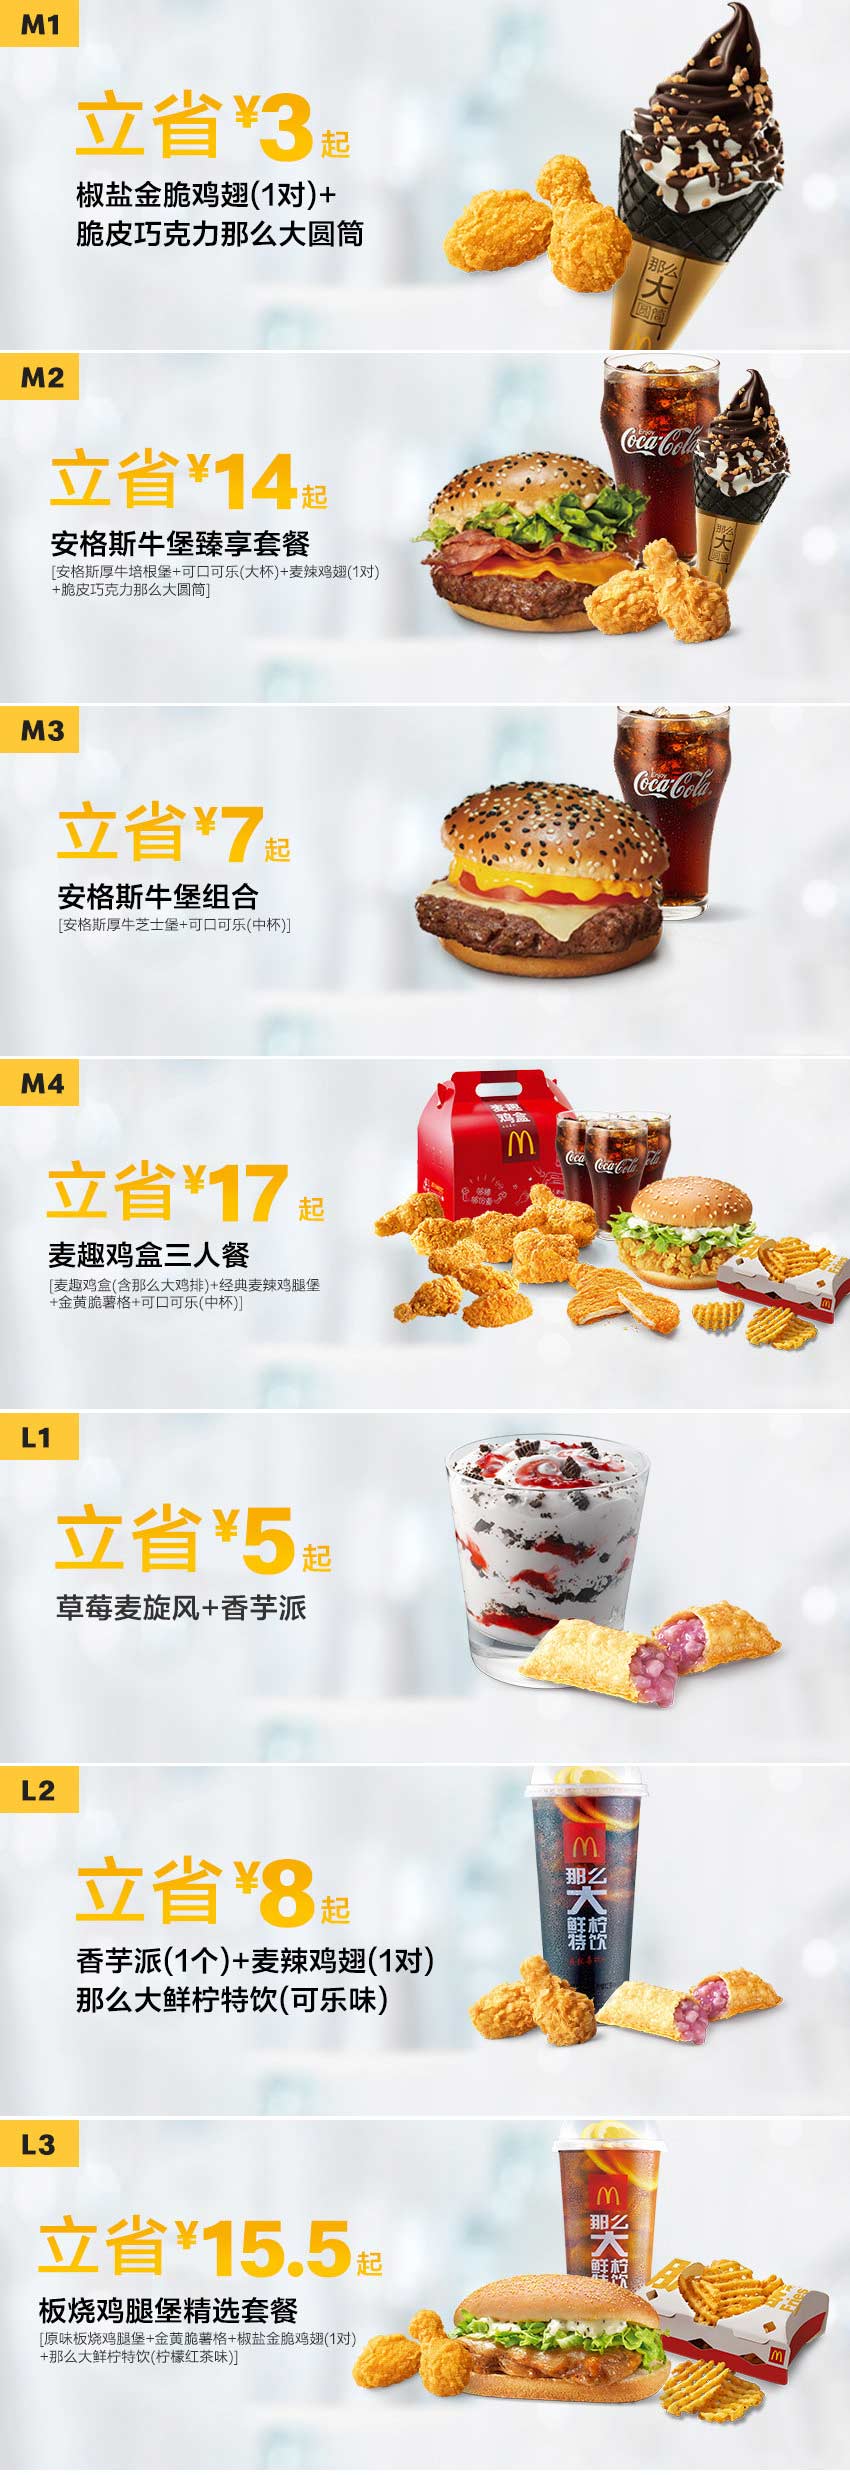 麦当劳优惠券2019年4月17日至5月14日整张版本，点餐手机出示或报优惠码享优惠价